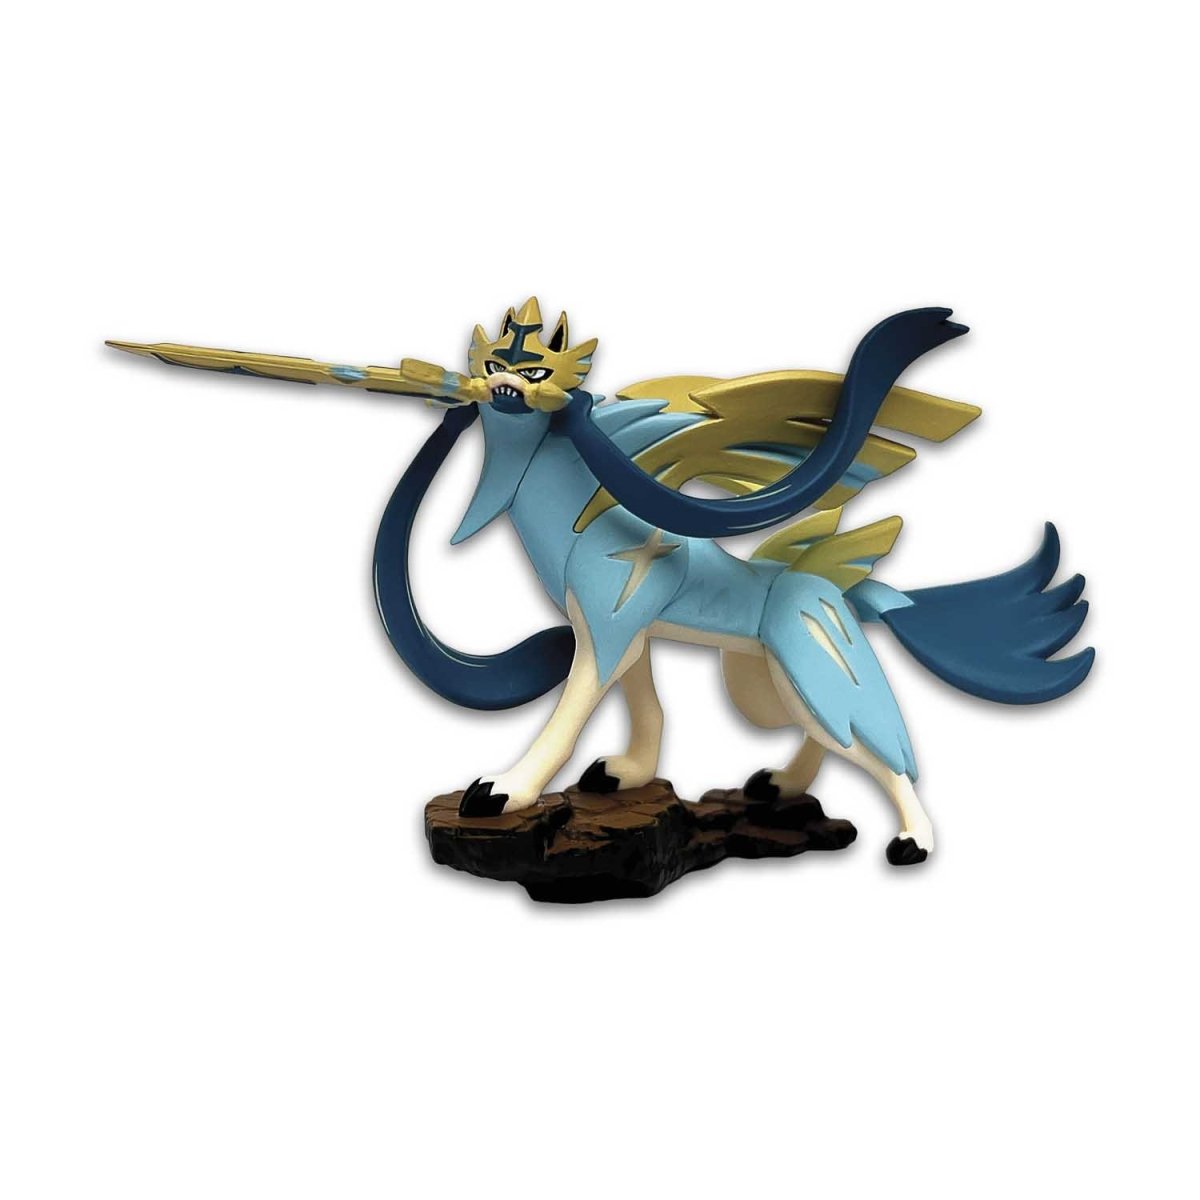 Pokémon Sword And Shield Shiny Zacian/Zamazenta Distribution